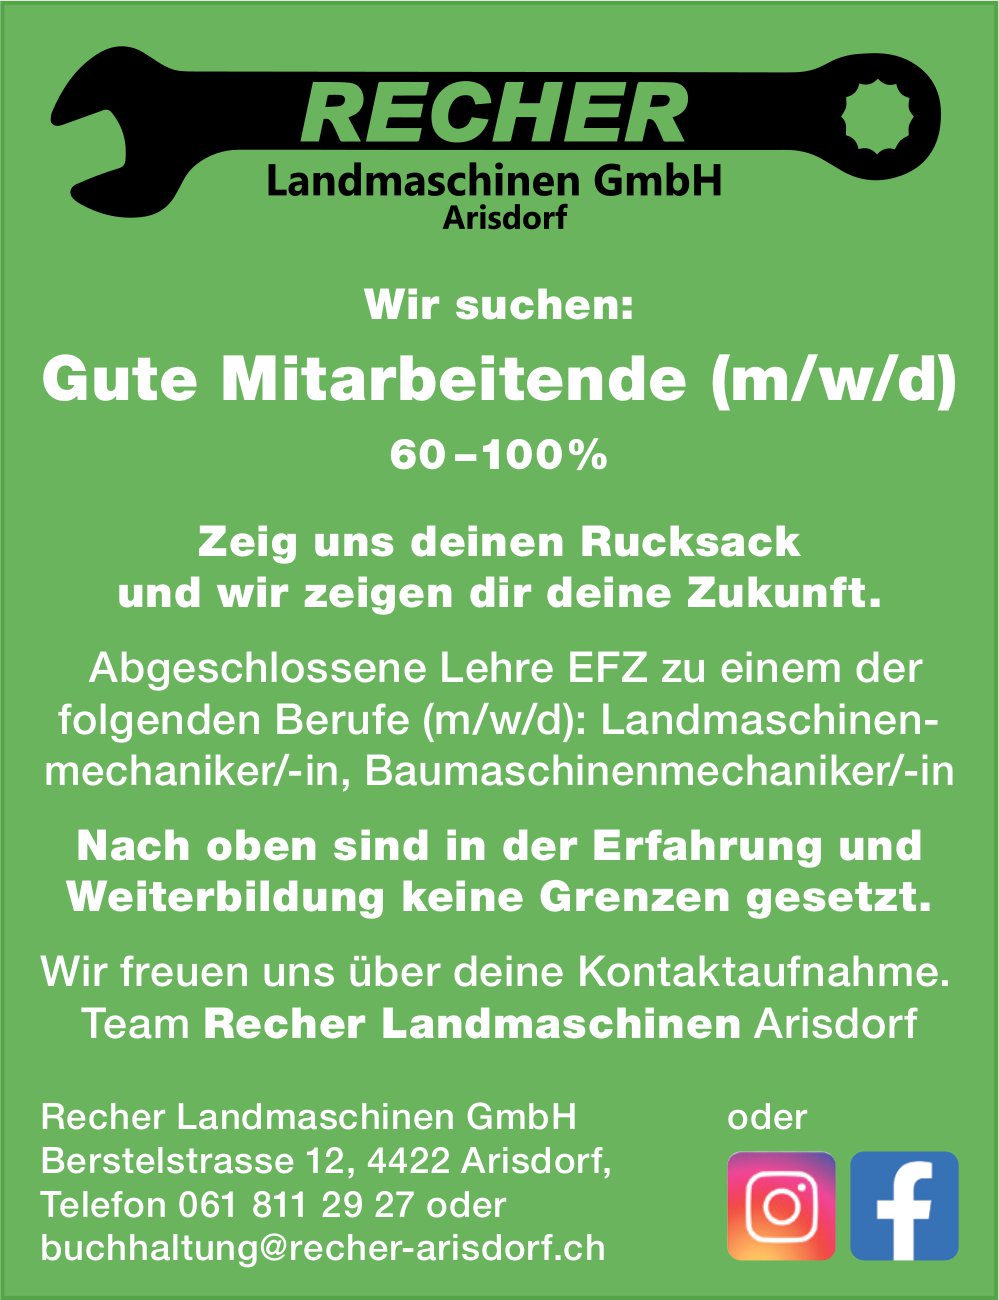 Gute Mitarbeitende (m/w/d), Recher Landmaschinen GmbH, Arisdorf, gesucht